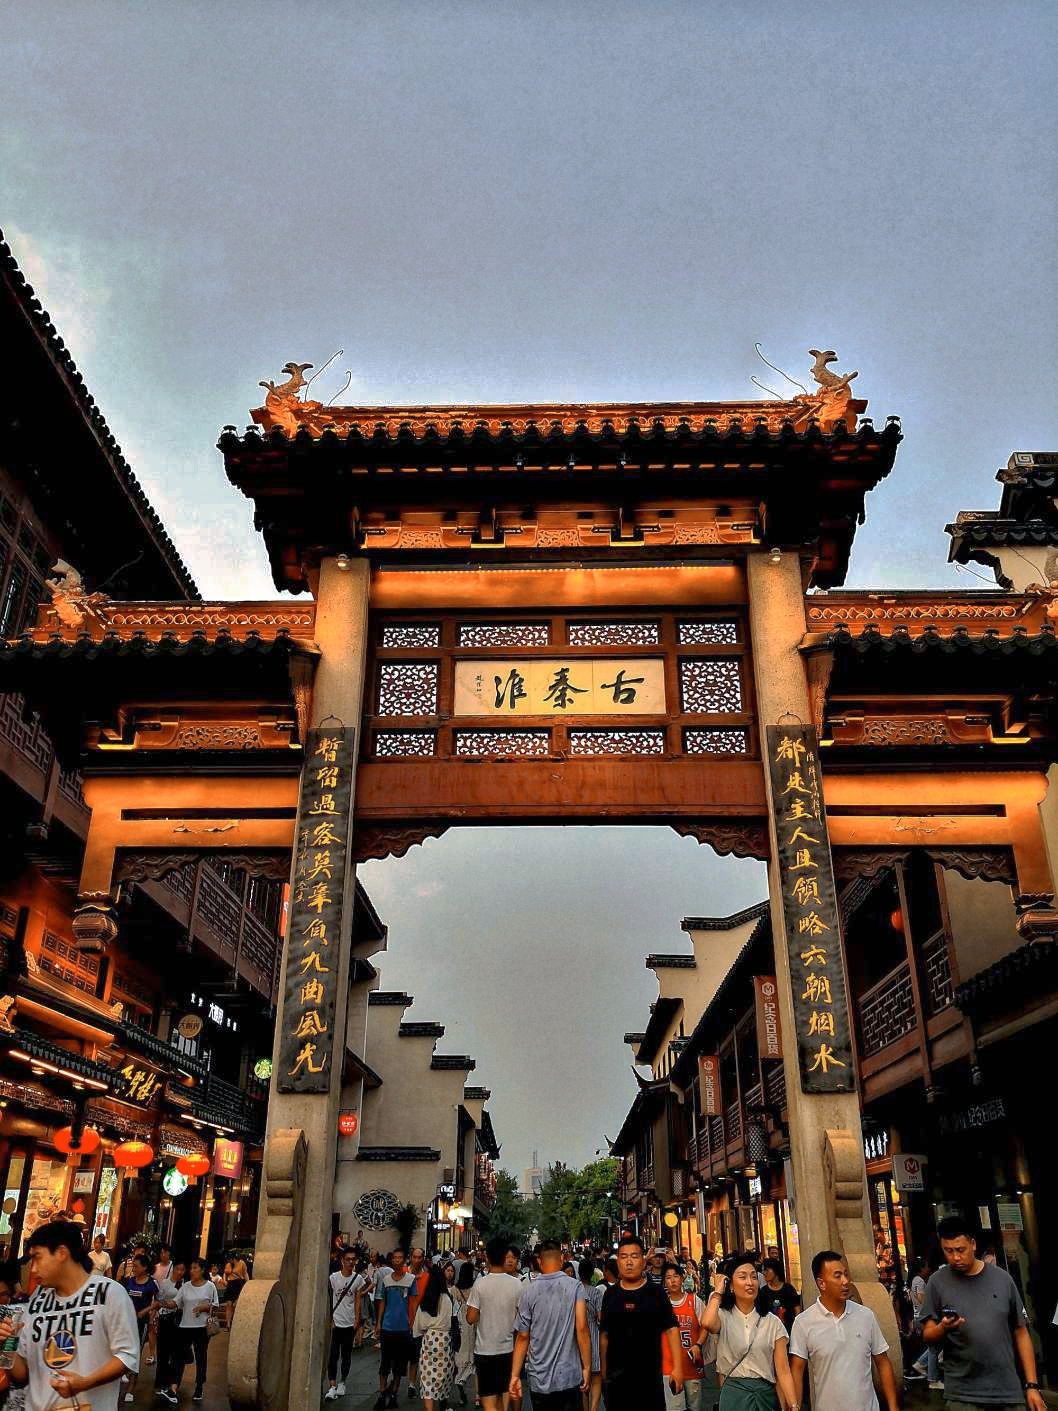 夫子庙秦淮风光带 位于南京秦淮区 是南京最具人气的5a旅游景点 也是